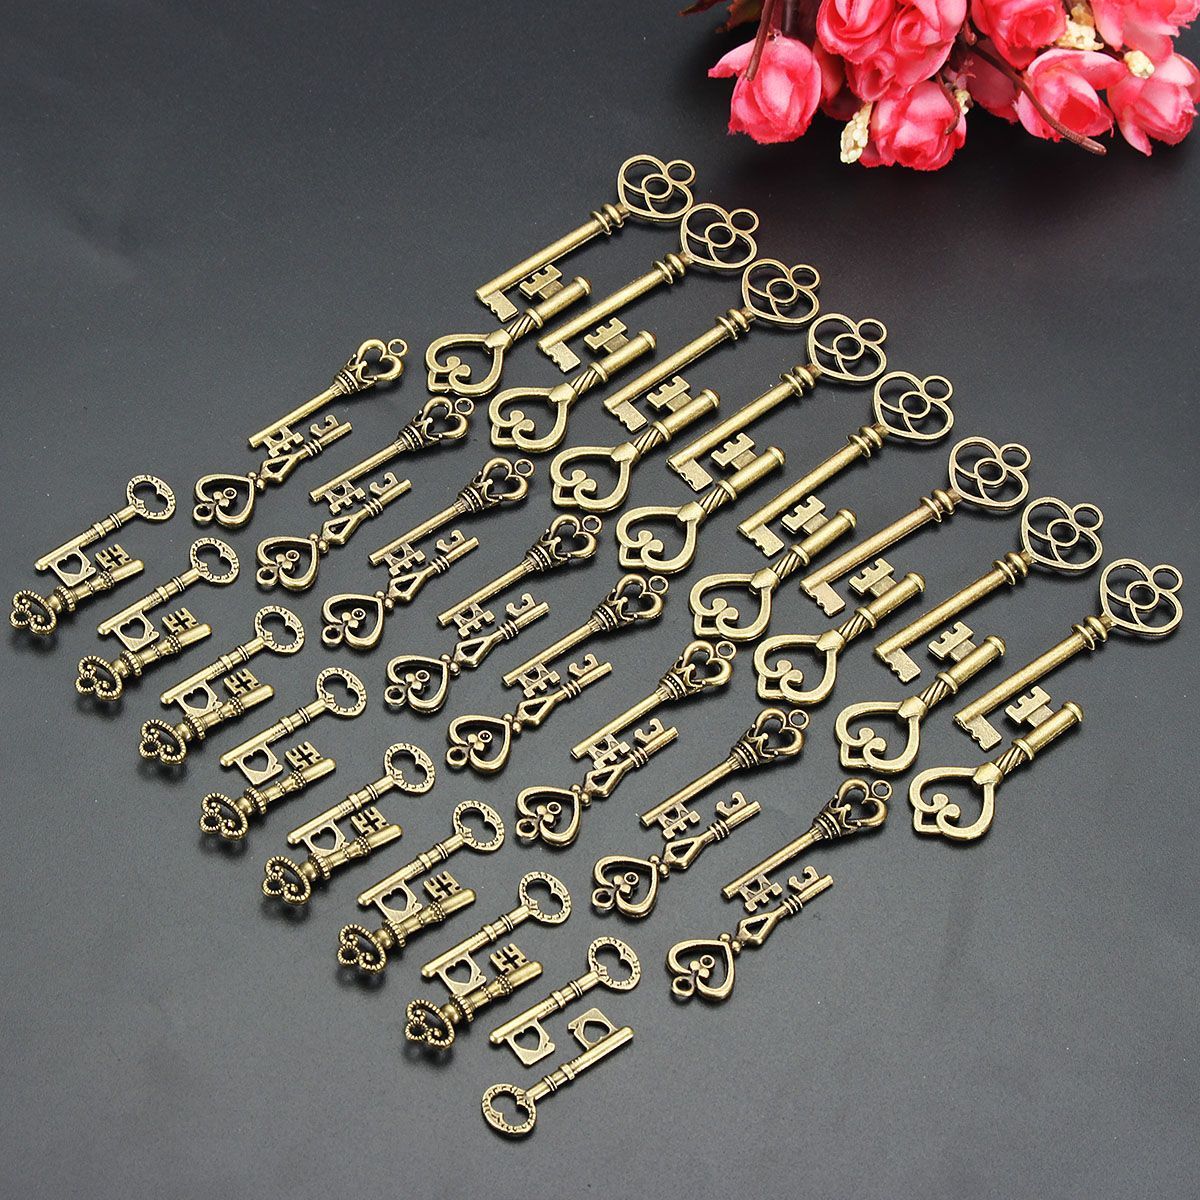 48Pcs-Vintage-Bronze-Key-For-Pendant-Necklace-Bracelet-DIY-Handmade-Accessories-Decoration-1192643